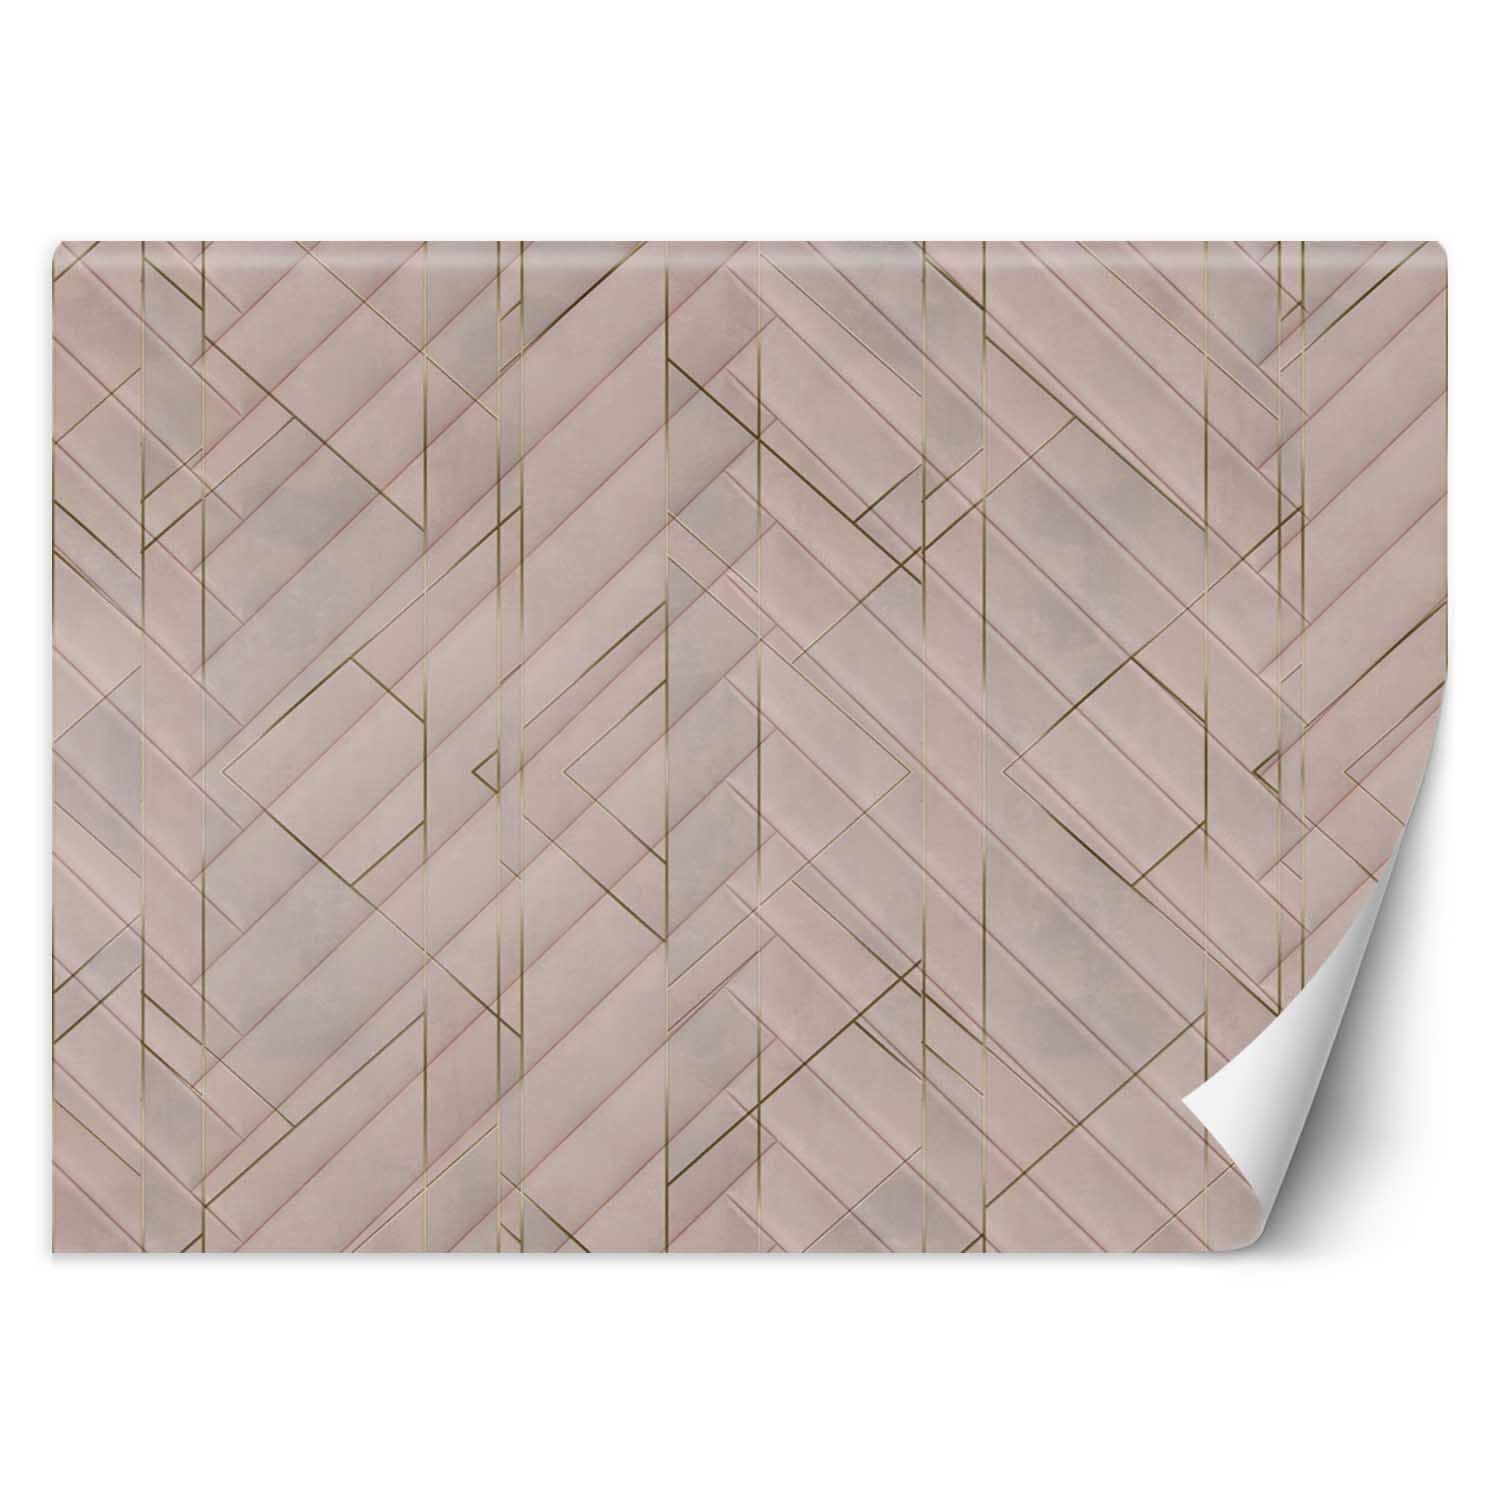 Trend24 – Behang – Geometrisch Patroon – Behangpapier – Behang Woonkamer – Fotobehang – 450x315x2 cm – Incl. behanglijm